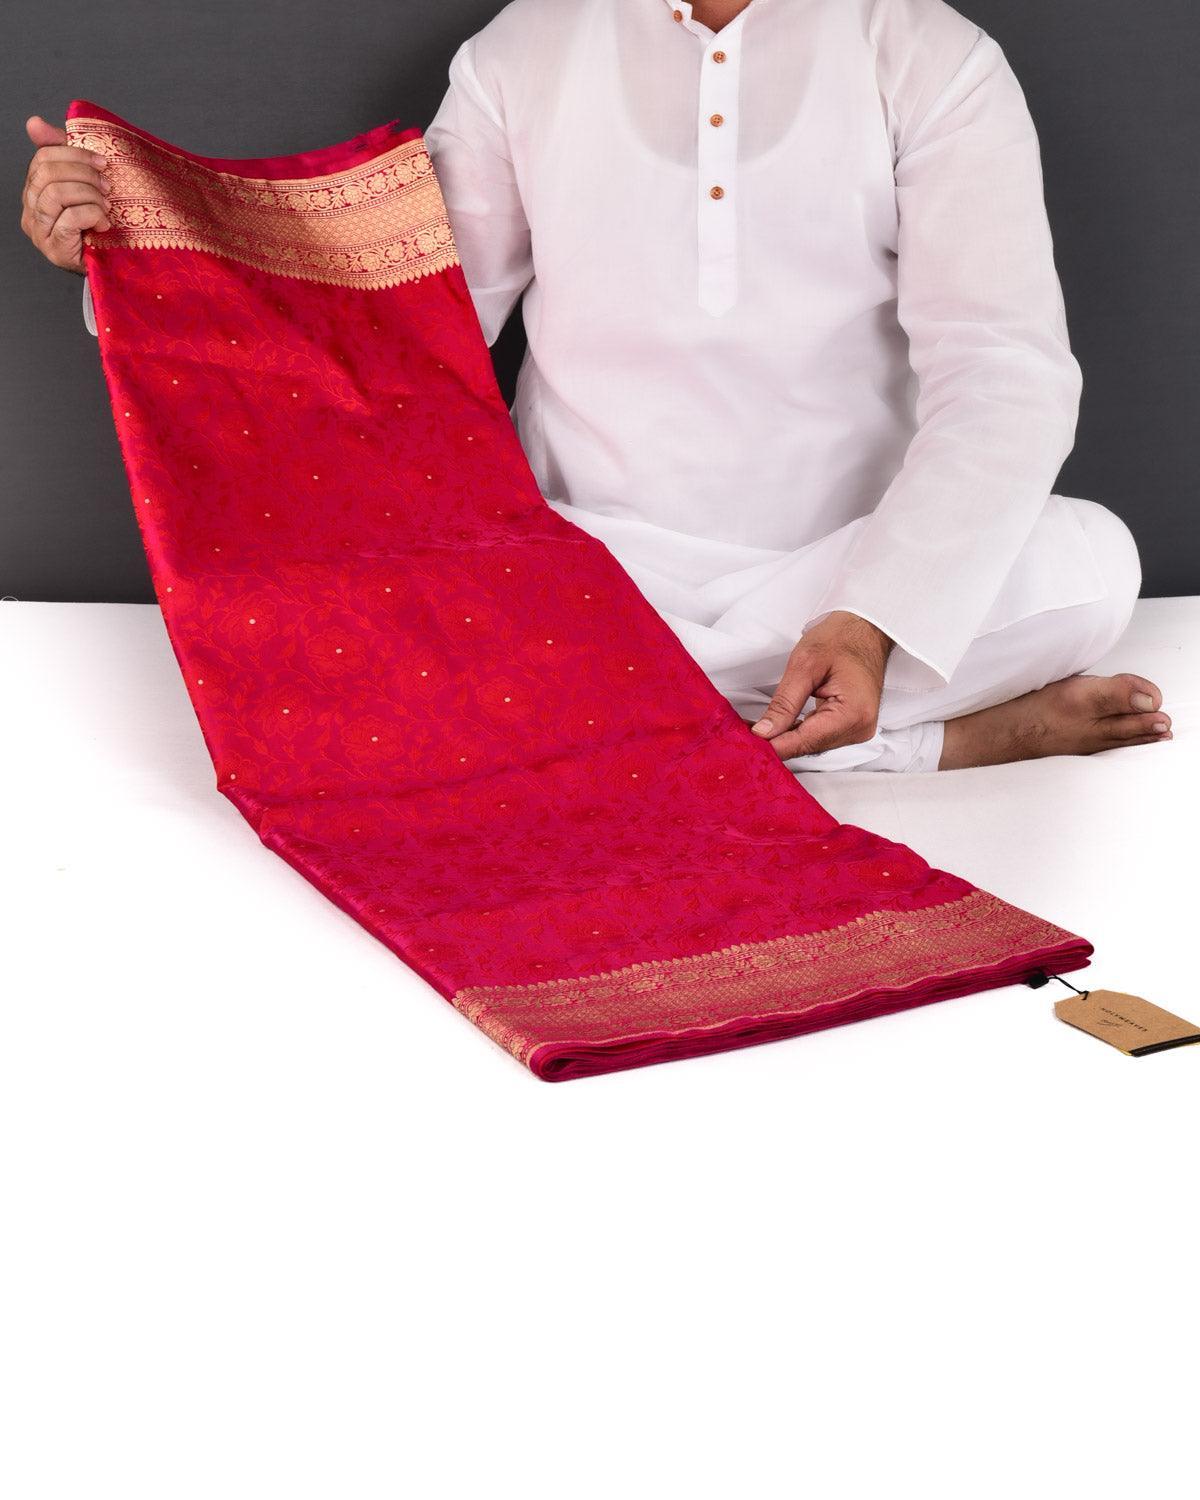 Shot Red On Pink Banarasi Gulab Jaal Tanchoi Brocade Handwoven Katan Silk Saree - By HolyWeaves, Benares